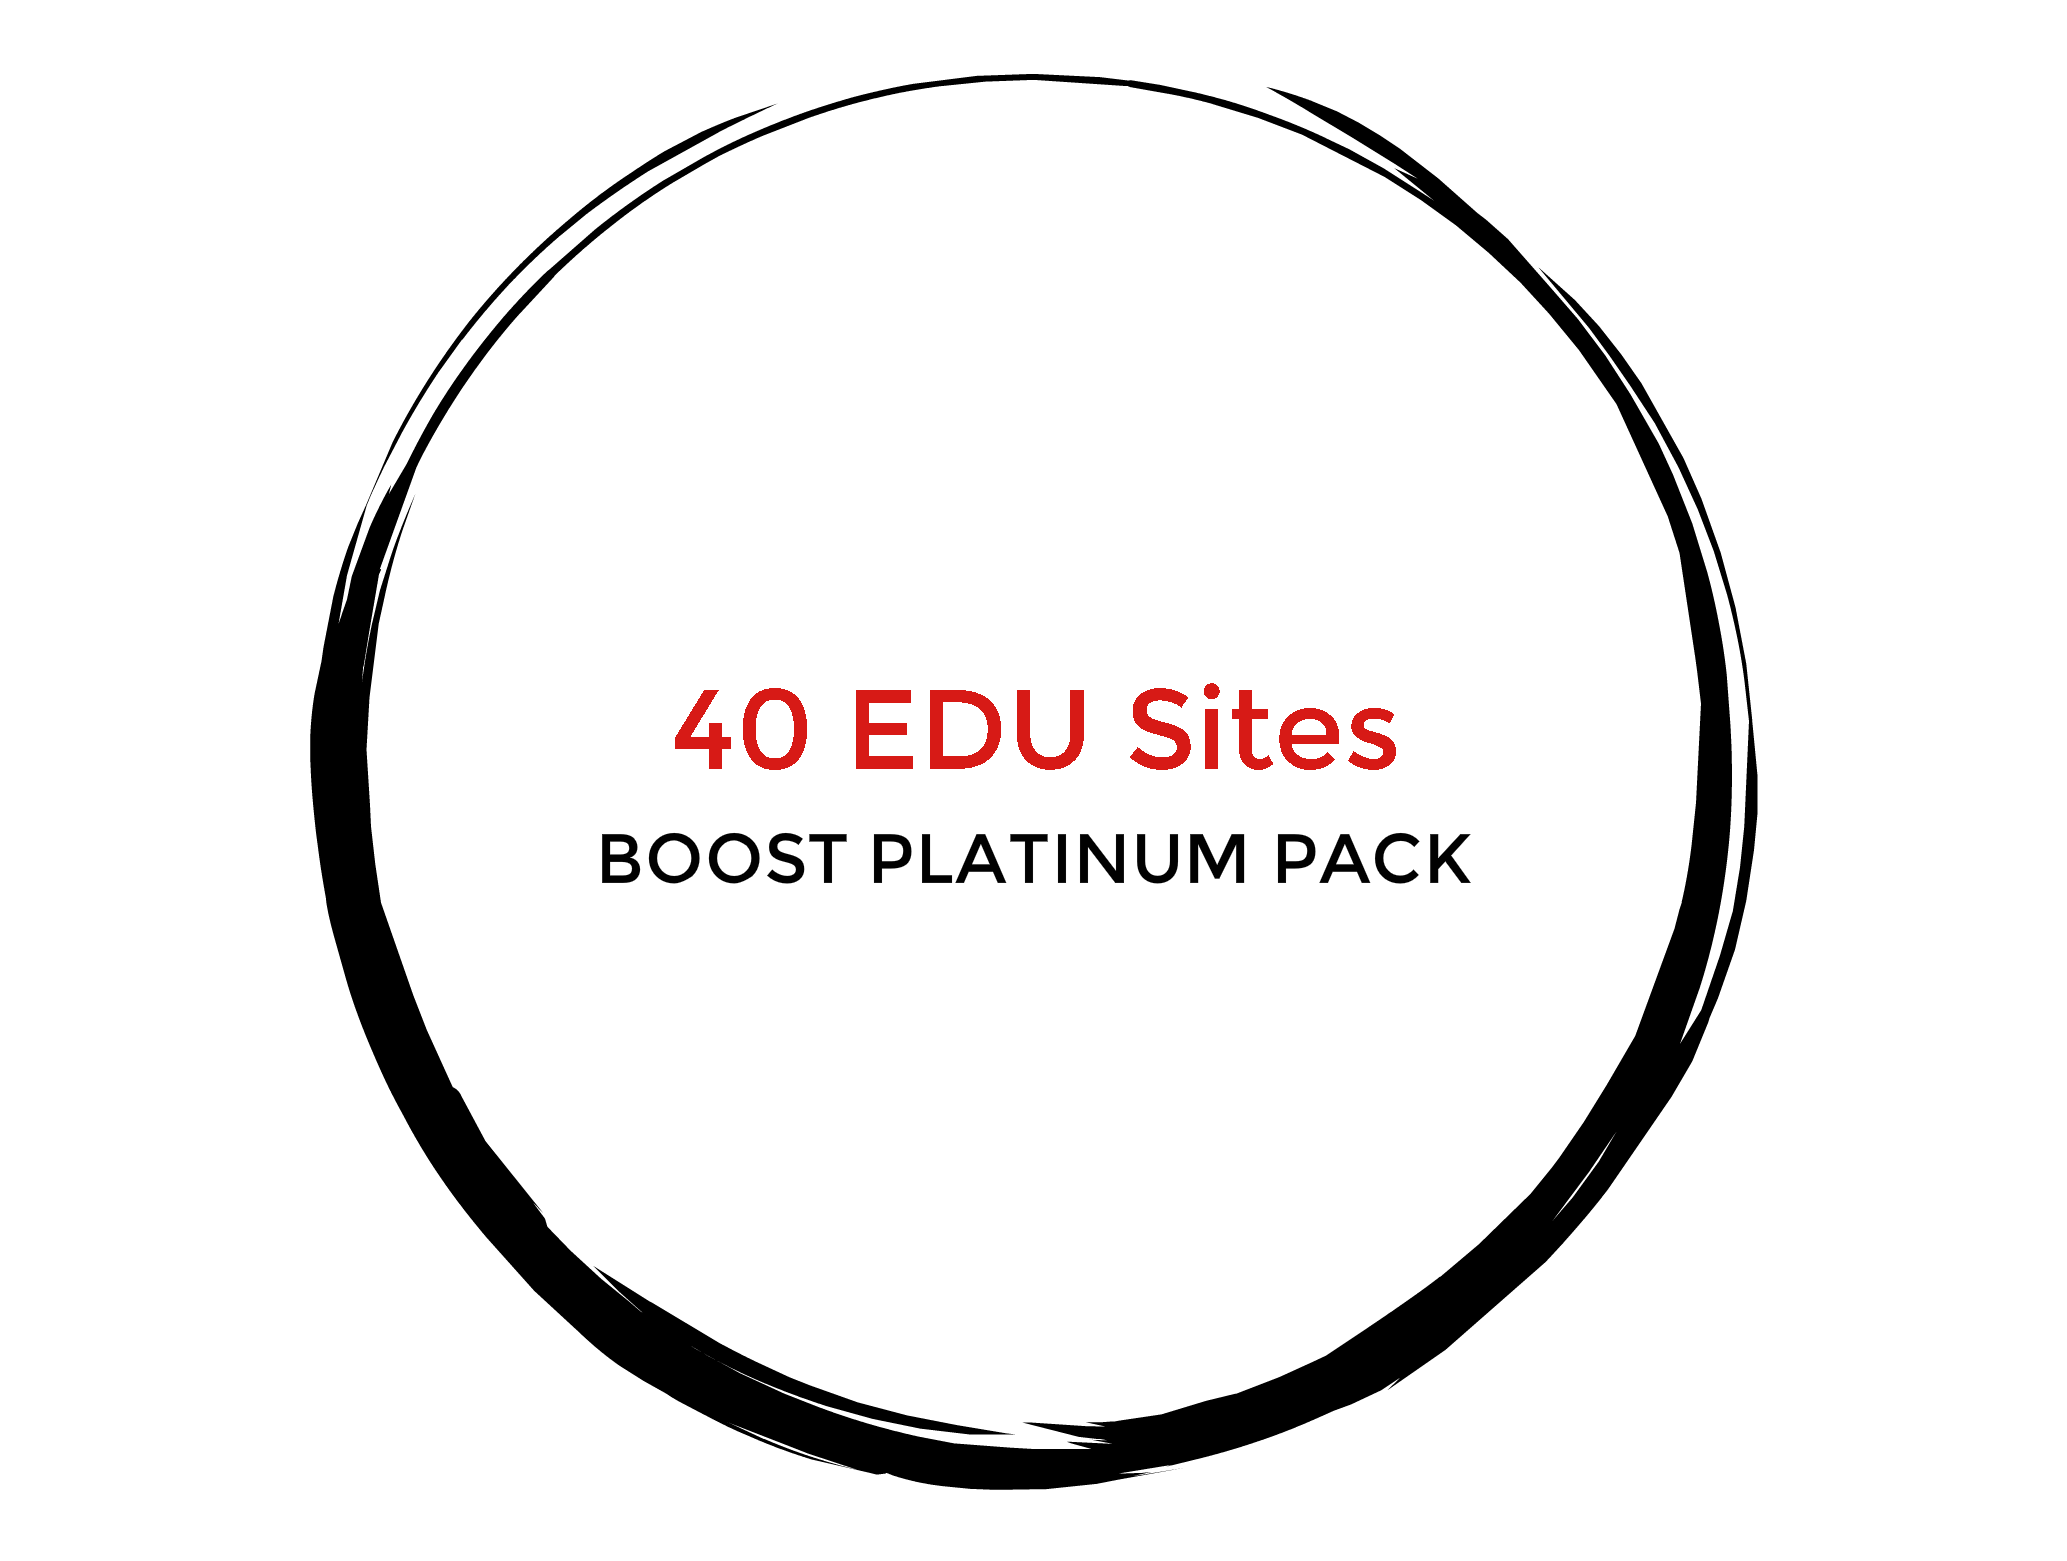 40 EDU Sites - Boost Platinum Pack